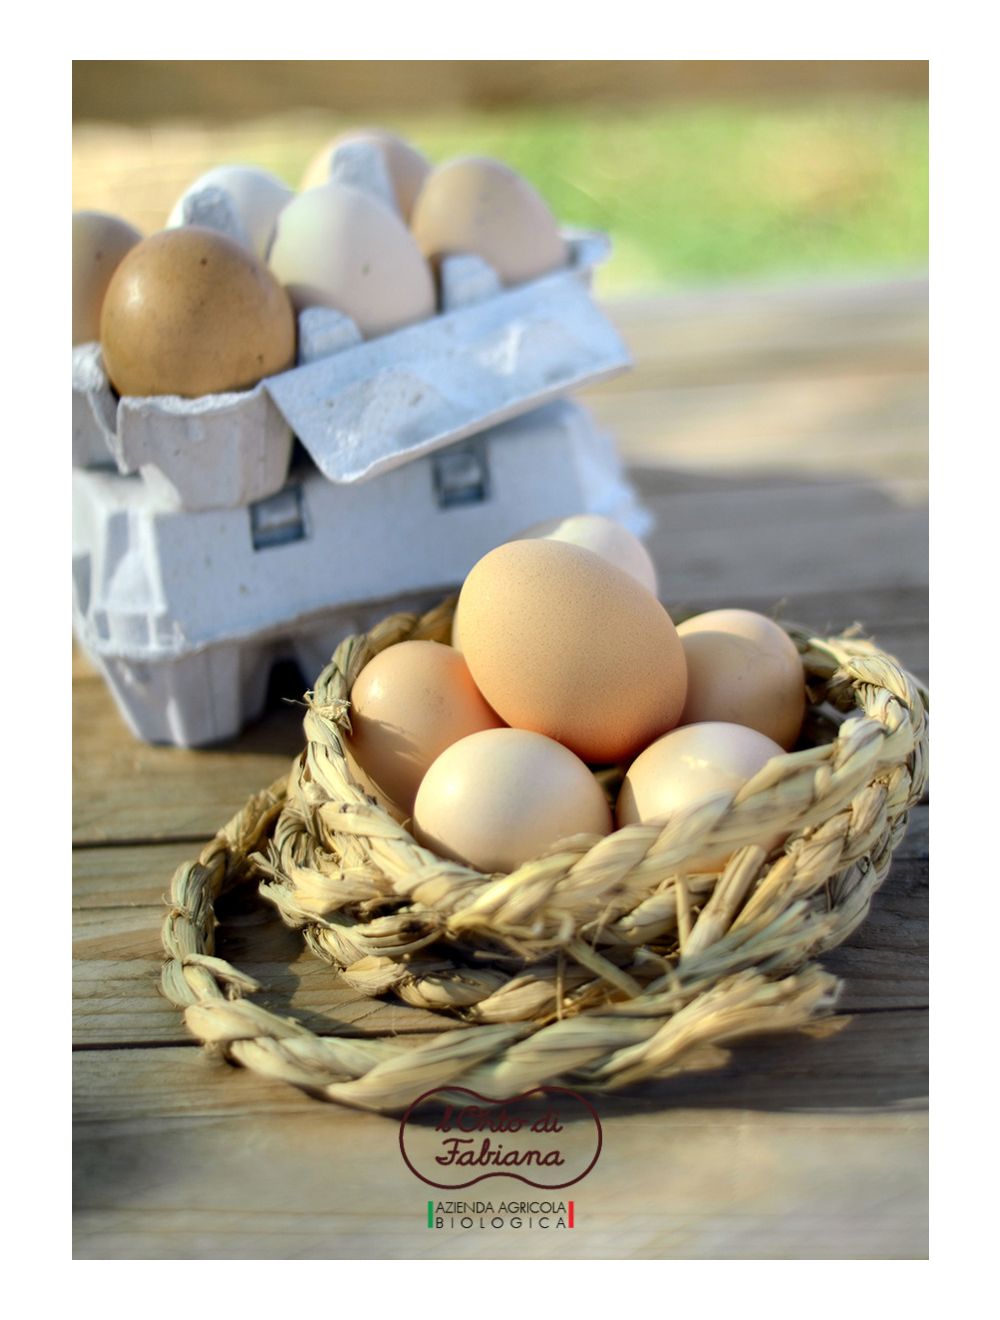 Uova fresche biologiche, da galline allevate a terra senza antibiotici